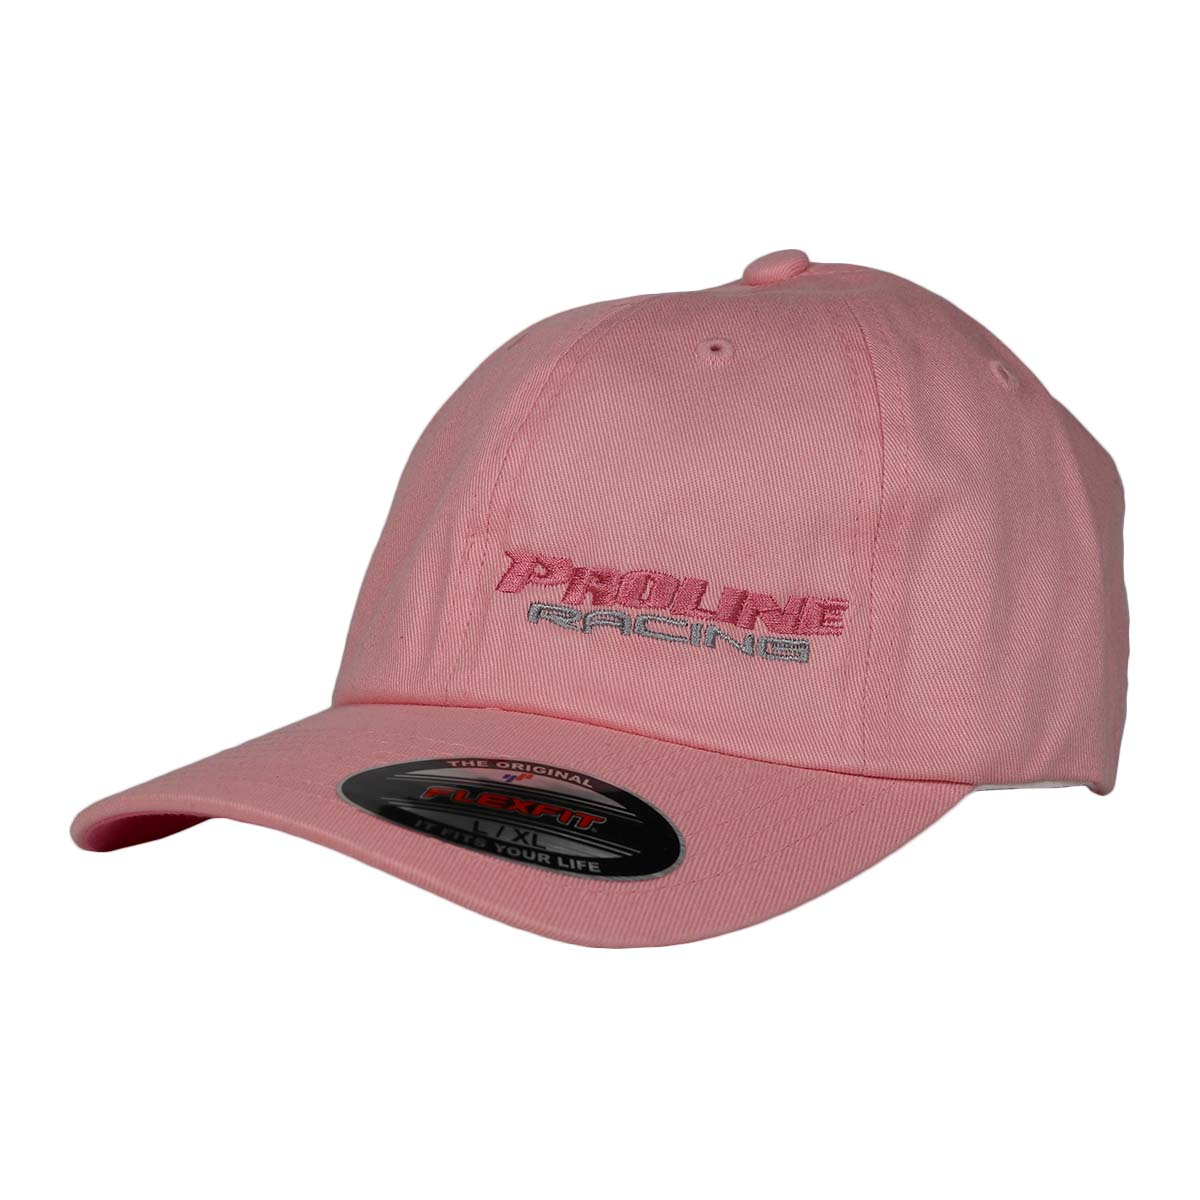 PLR Racing FLEXFIT HAT PINK BLACK Pro Line - W/ HAT - LETTERING